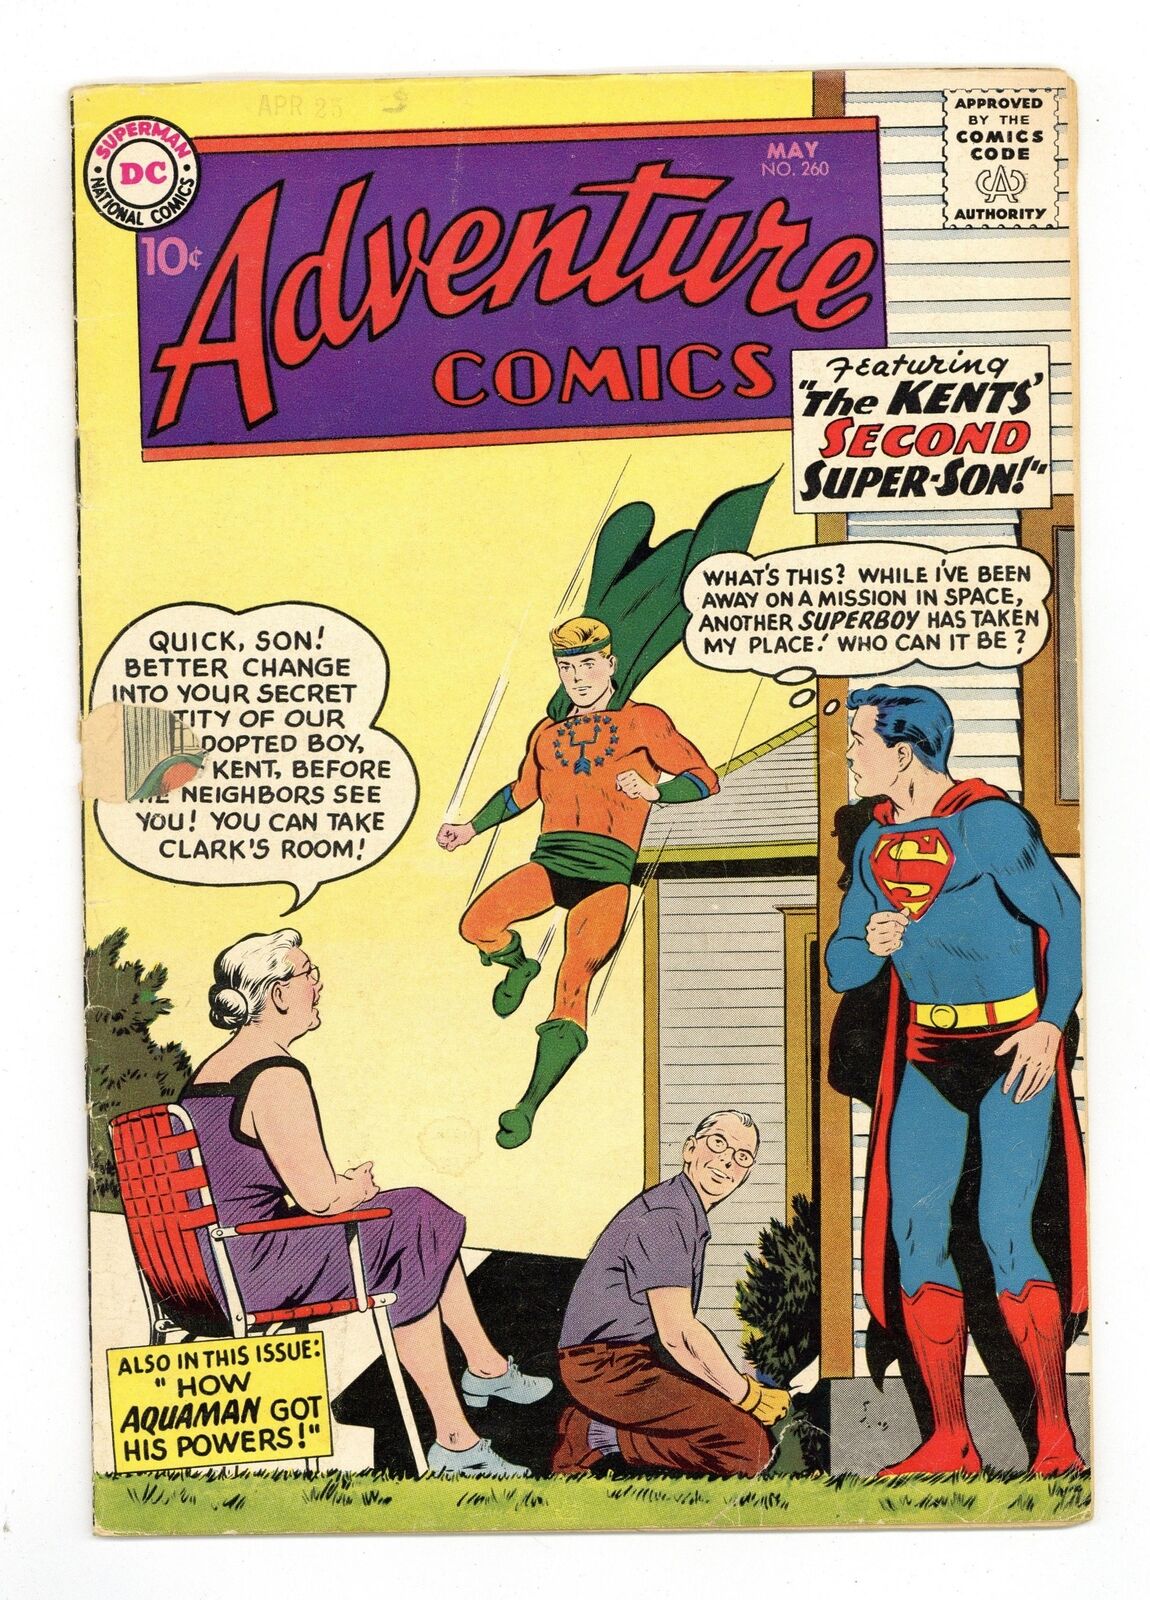 Adventure Comics #260 GD/VG 3.0 1959 1st Silver Age origin of Aquaman